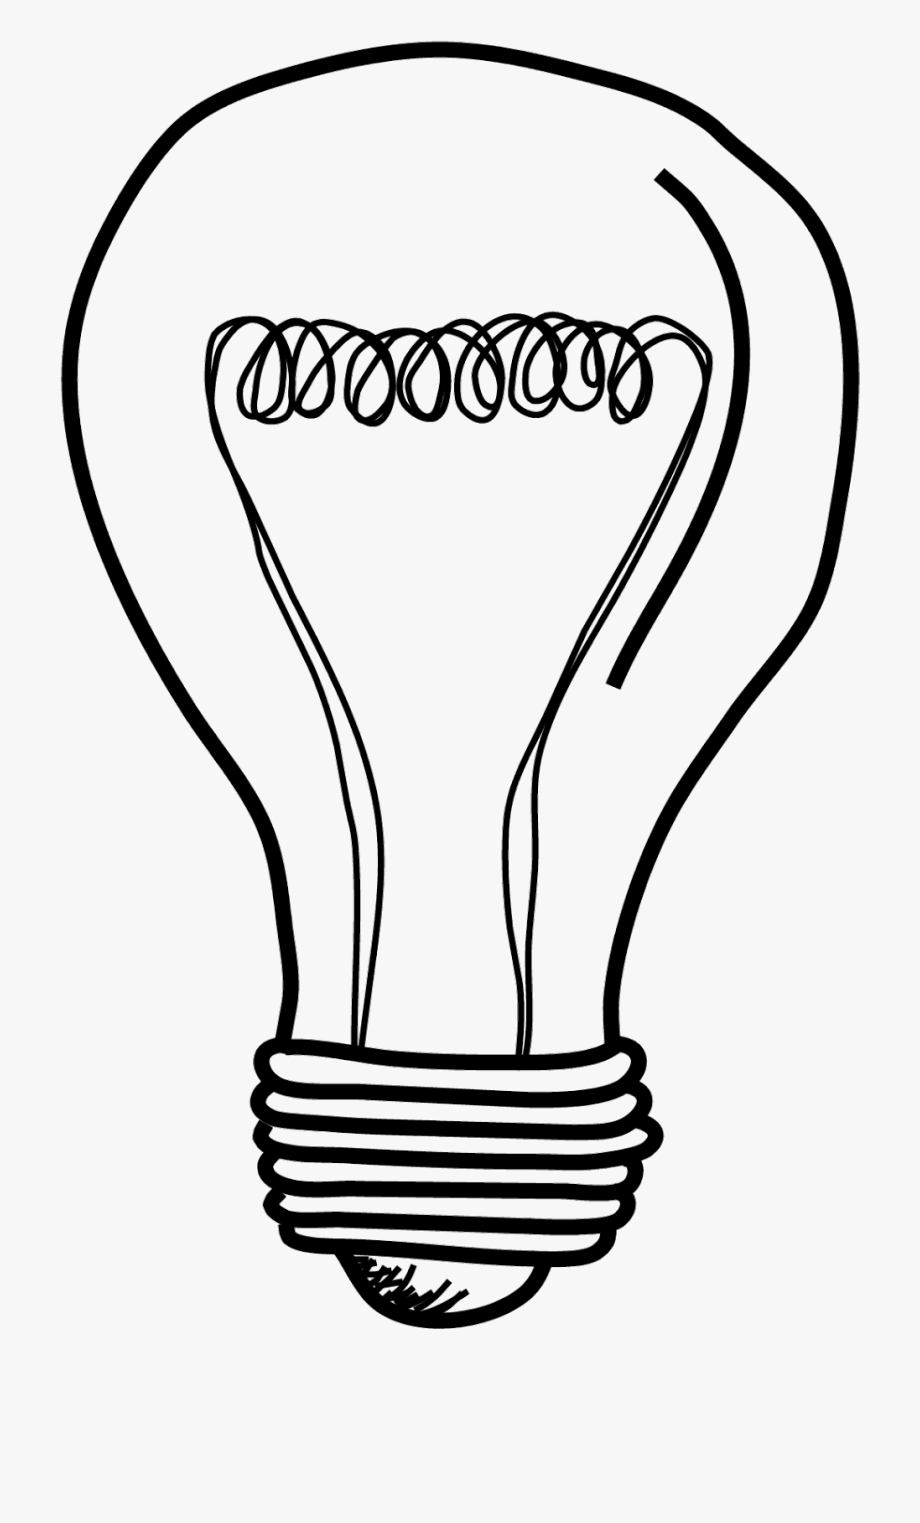 lightbulb clipart genius hour